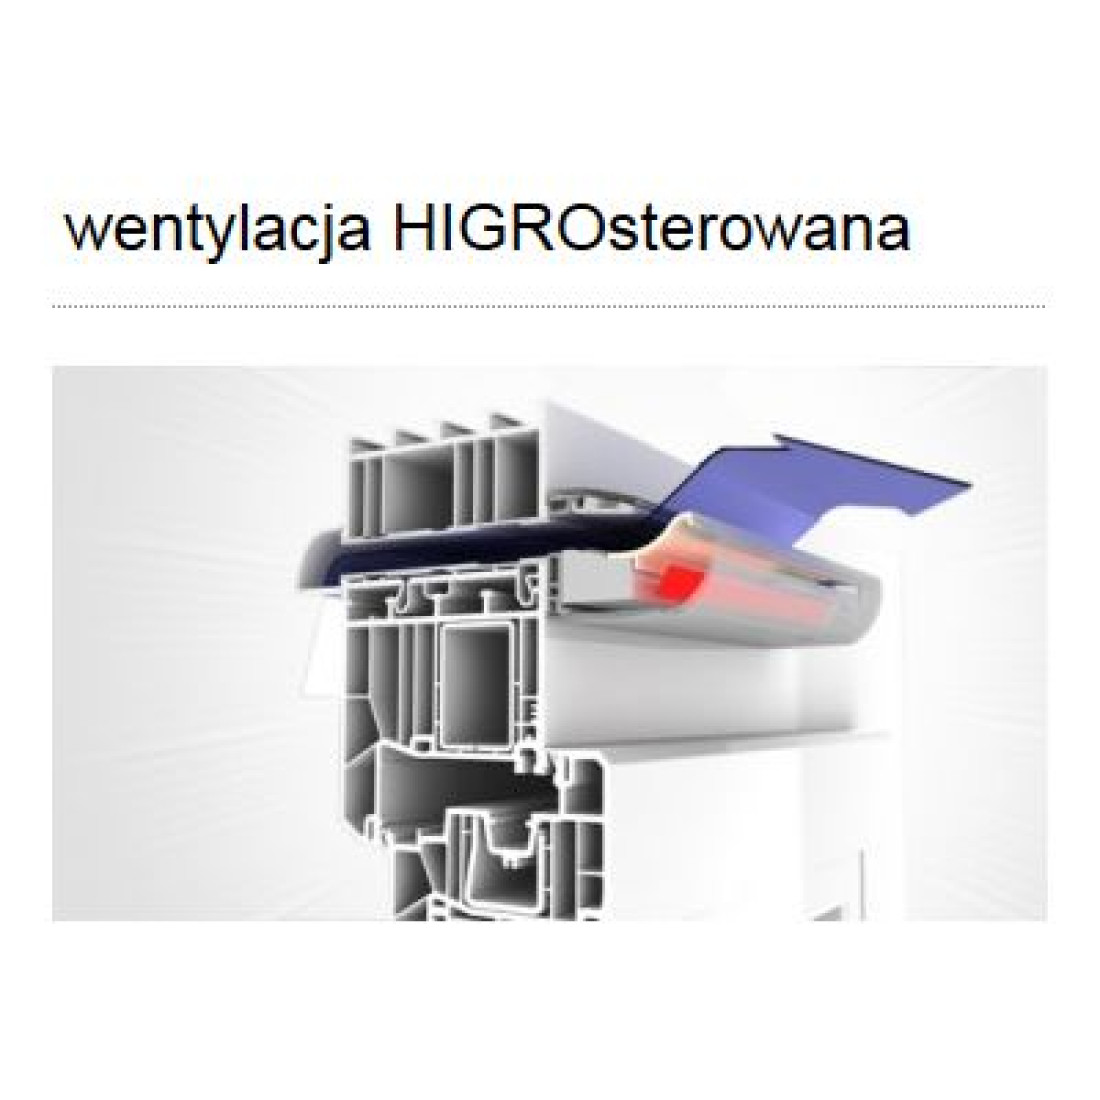 Zasada działania wentylacji HIGROsterowanej przedstawia AERECO WENTYLACJA